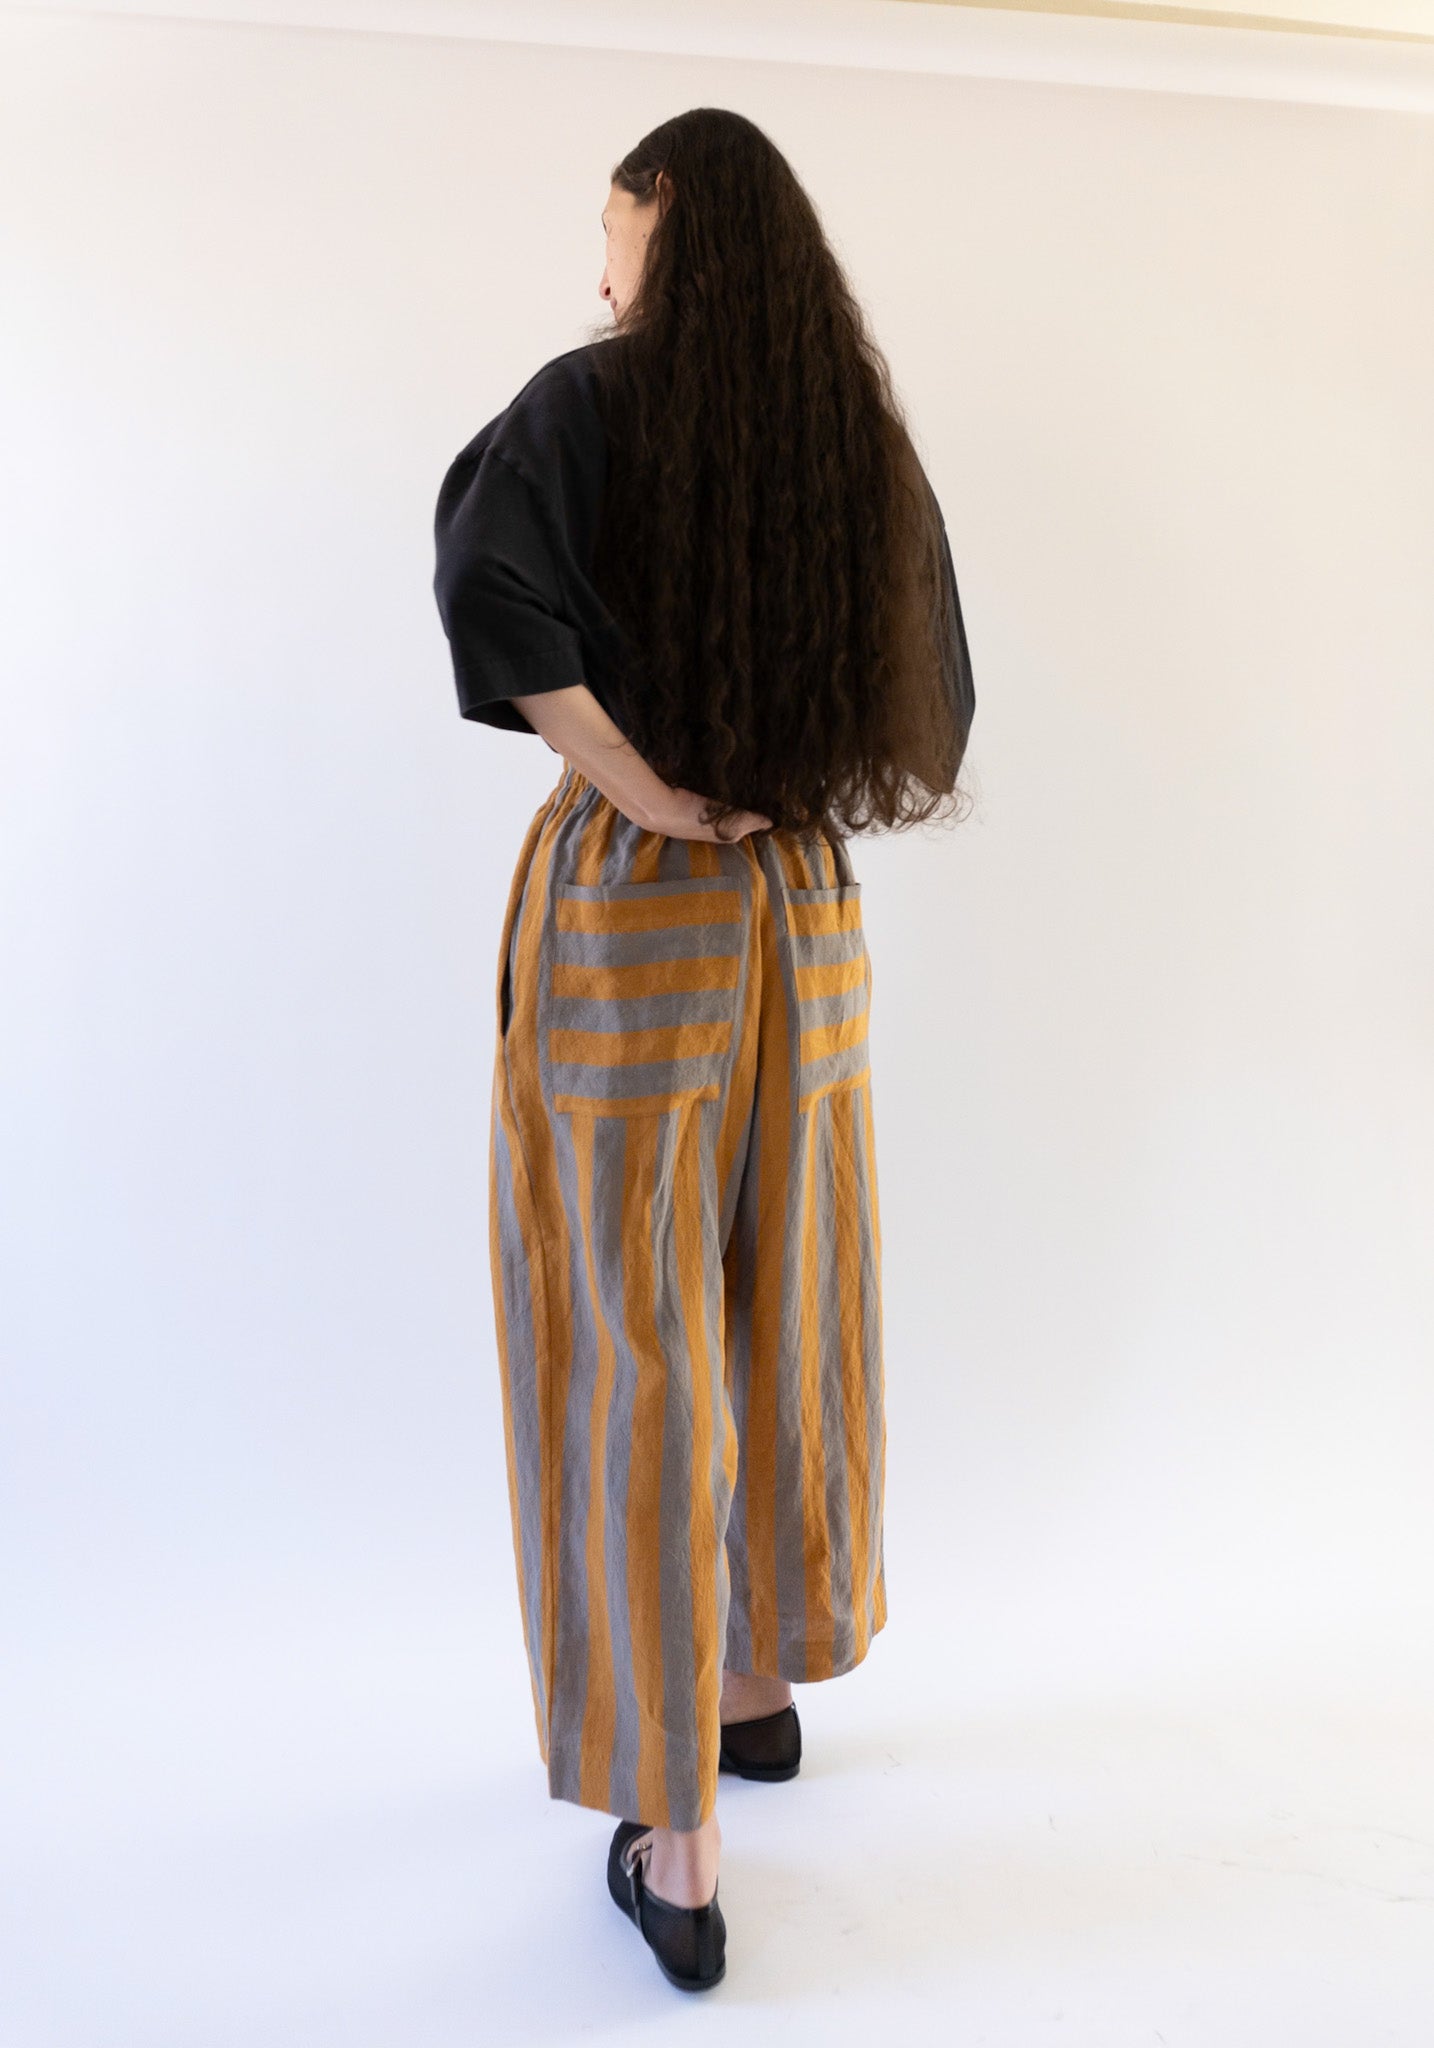 Luna Trousers in Bronze Denim Stripe